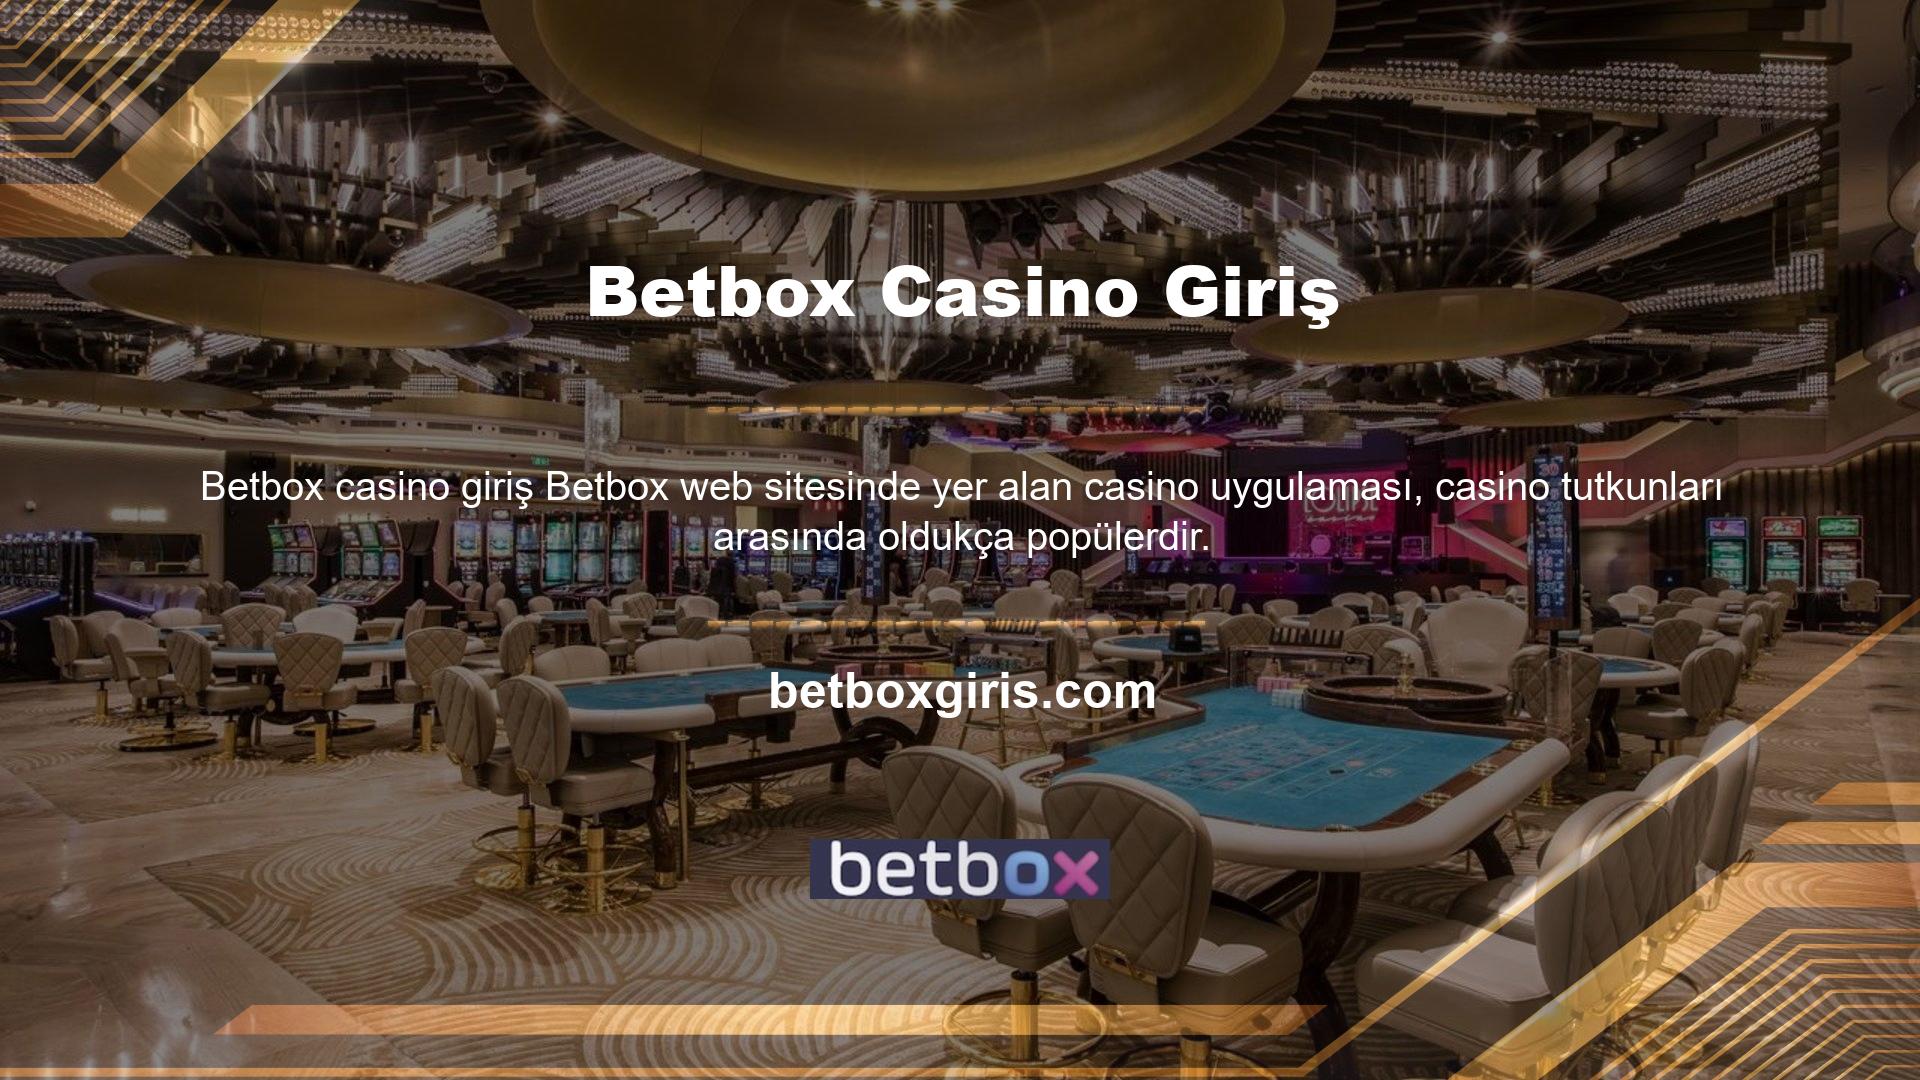 Betbox casino giriş işlemi yaparak sitedeki uygulamadan sorunsuz bir şekilde yararlanma ve kazanç elde etme imkanına sahip olacaksınız